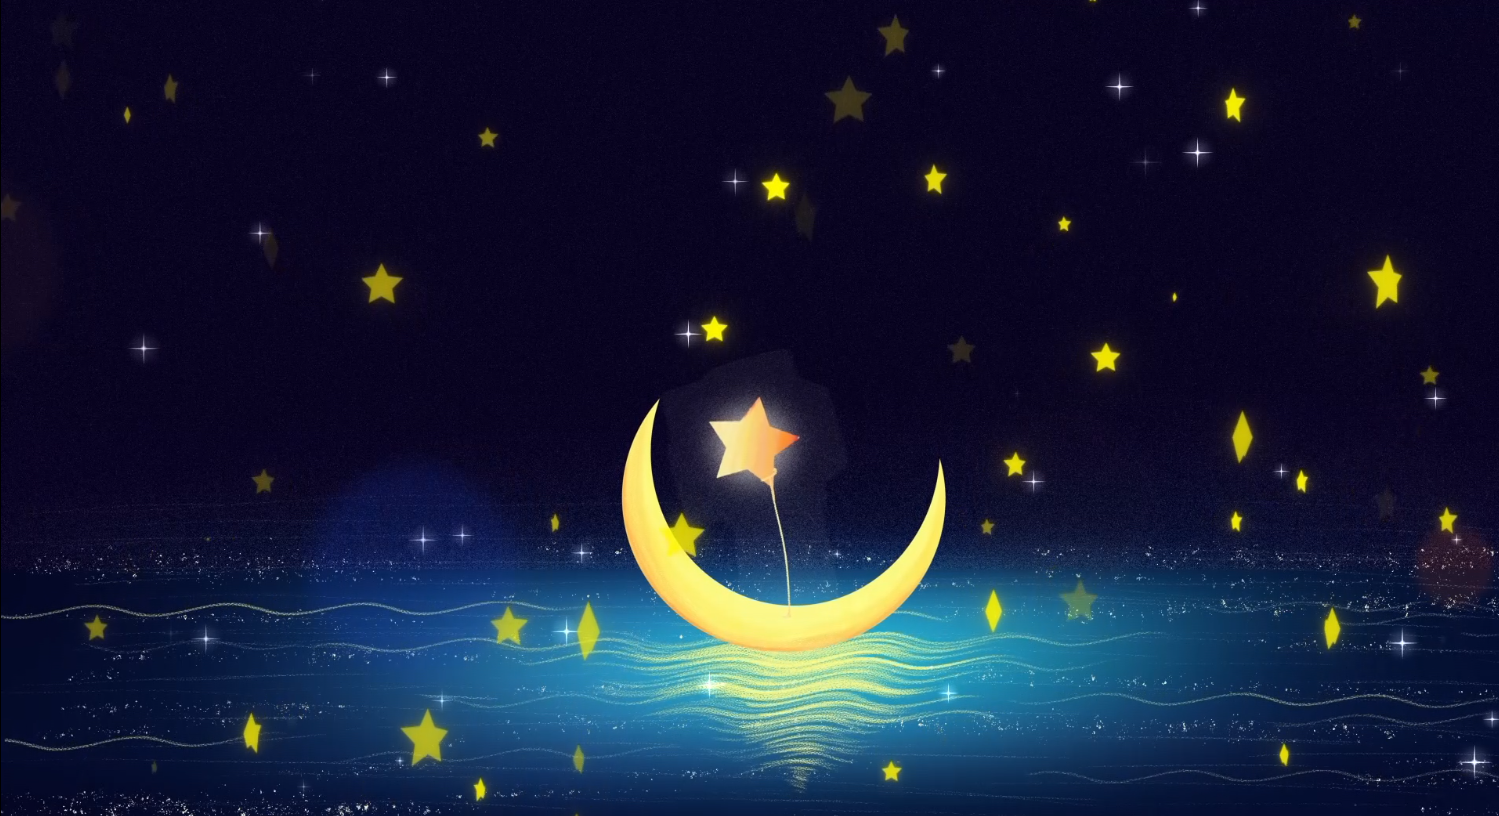 2个夜晚场景的星星月亮背景视频素材免费下载